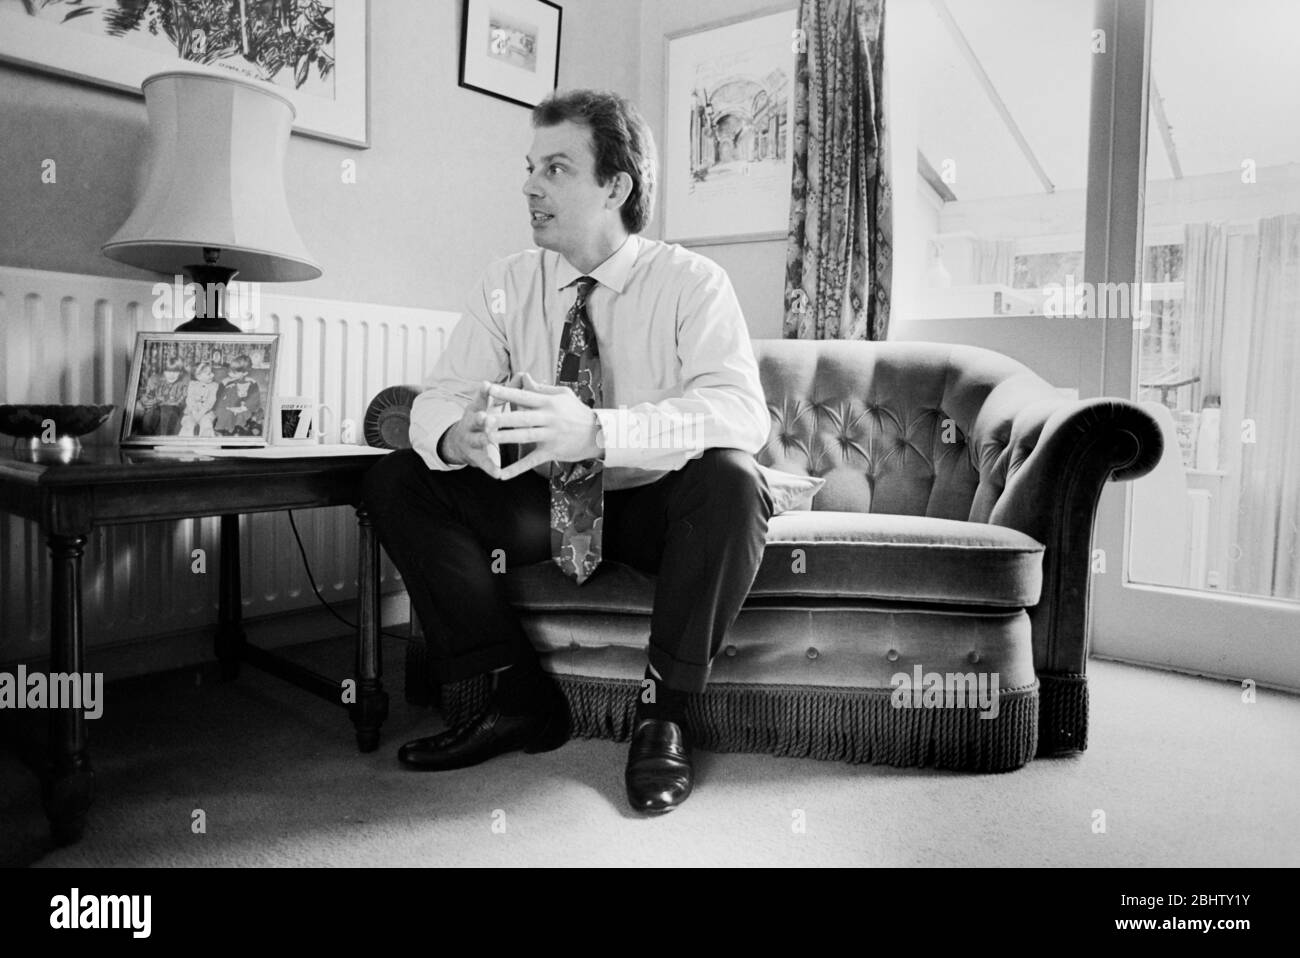 Tony Blair, photographié chez lui au début des années 1990, avant de devenir Premier ministre du Royaume-Uni. Banque D'Images